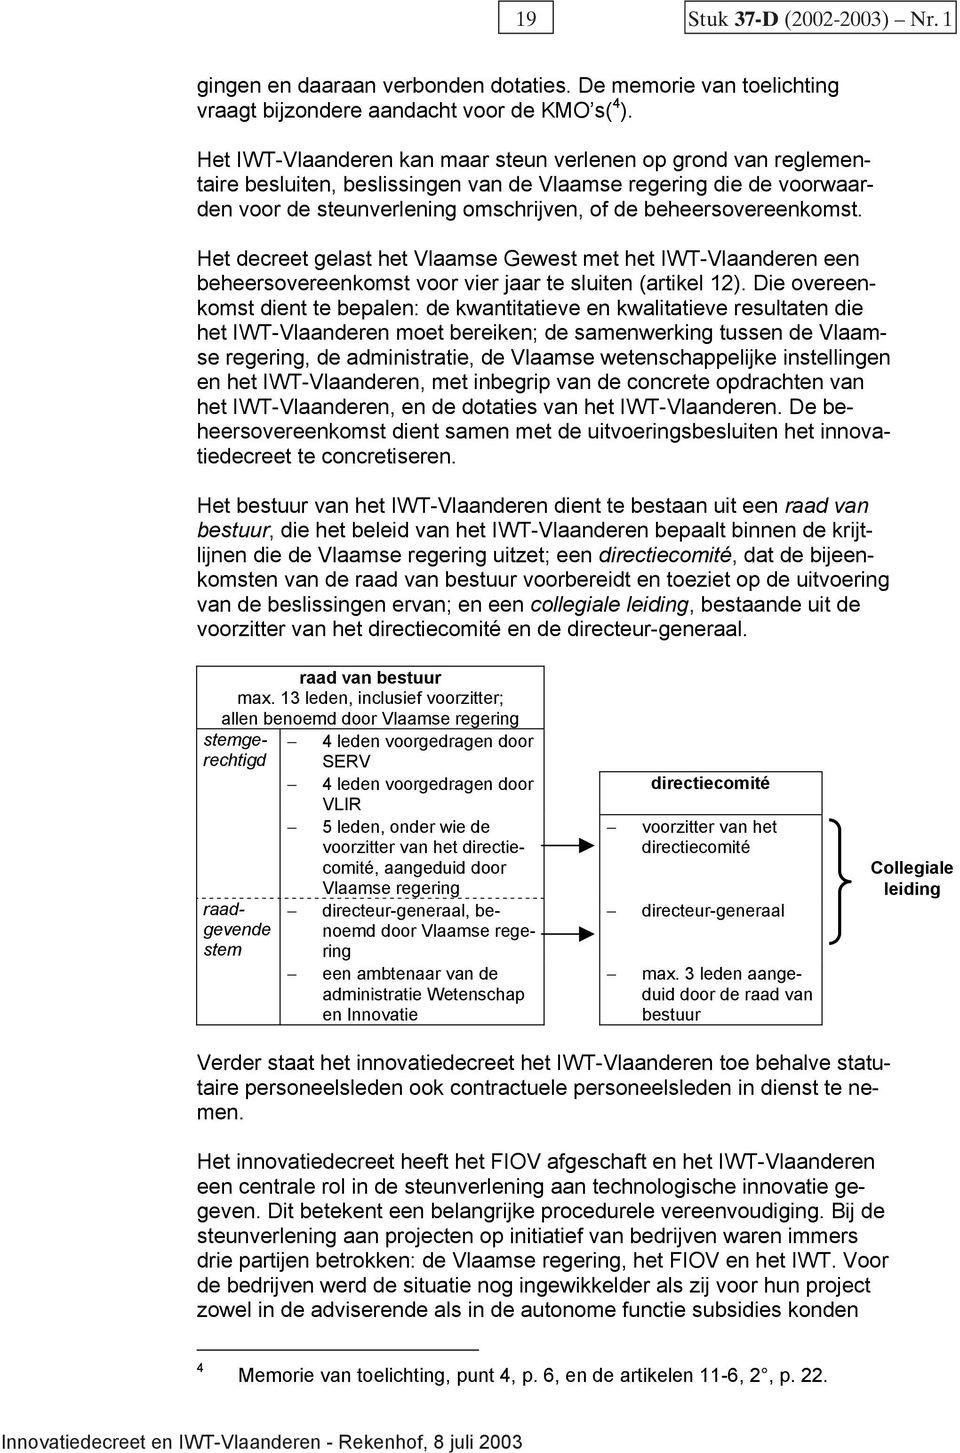 Het decreet gelast het Vlaamse Gewest met het IWT-Vlaanderen een beheersovereenkomst voor vier jaar te sluiten (artikel 12).